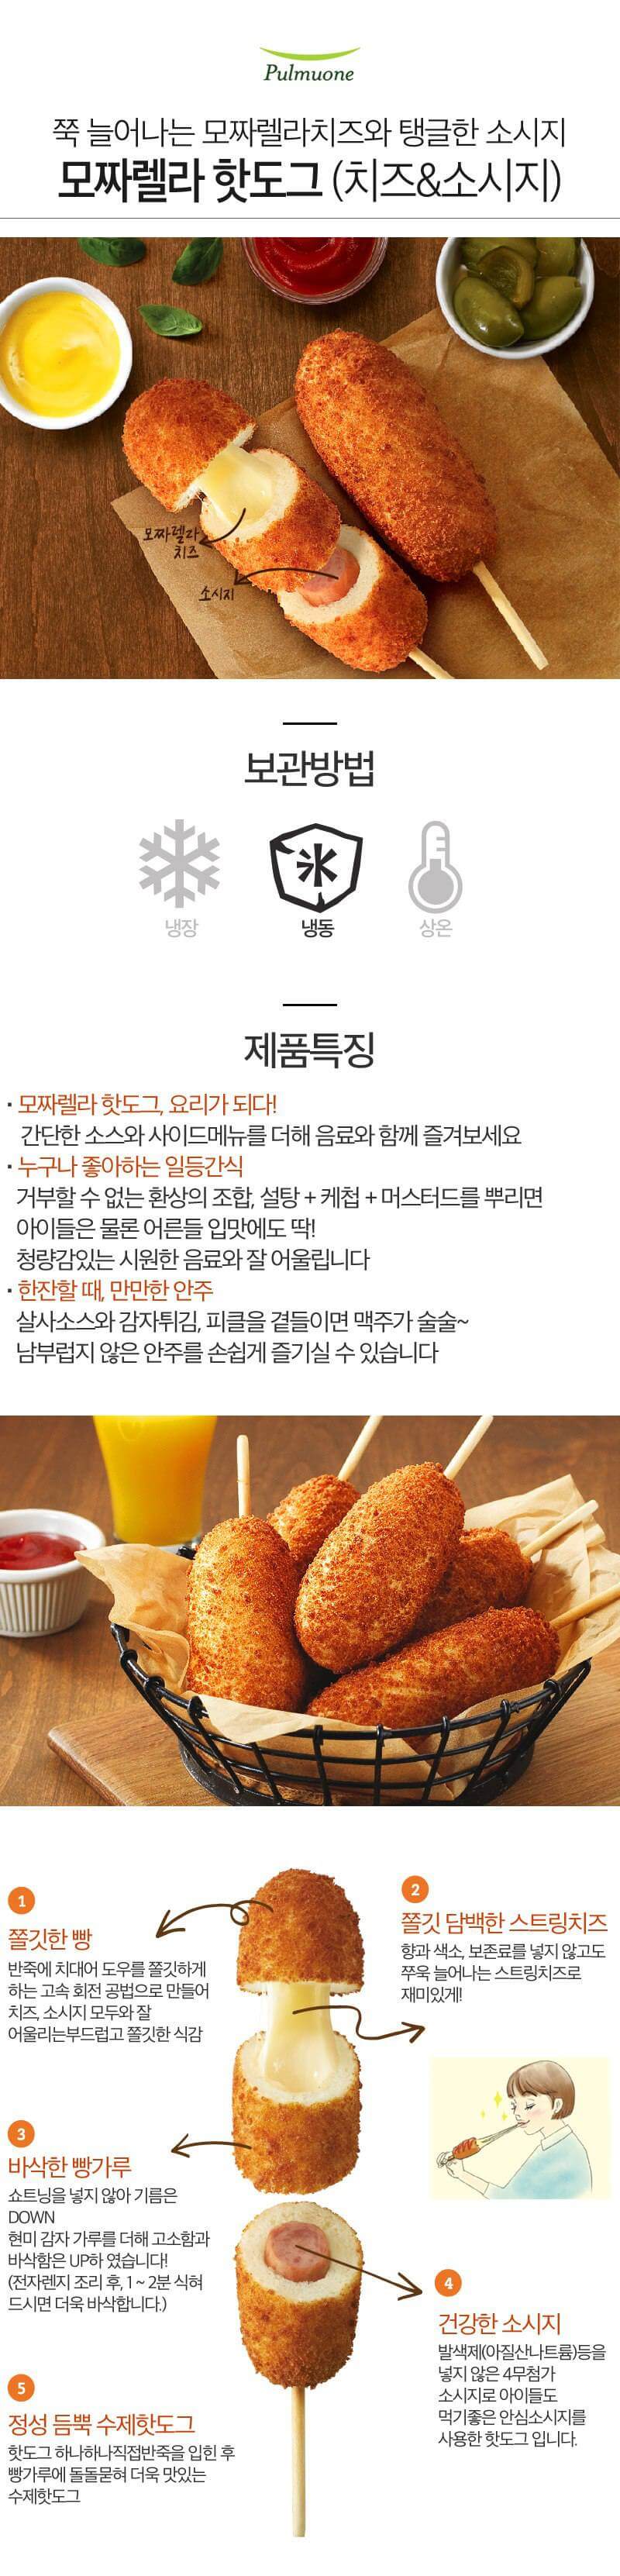 韓國食品-[풀무원] 모짜렐라핫도그 400g (no. 7 & 22)